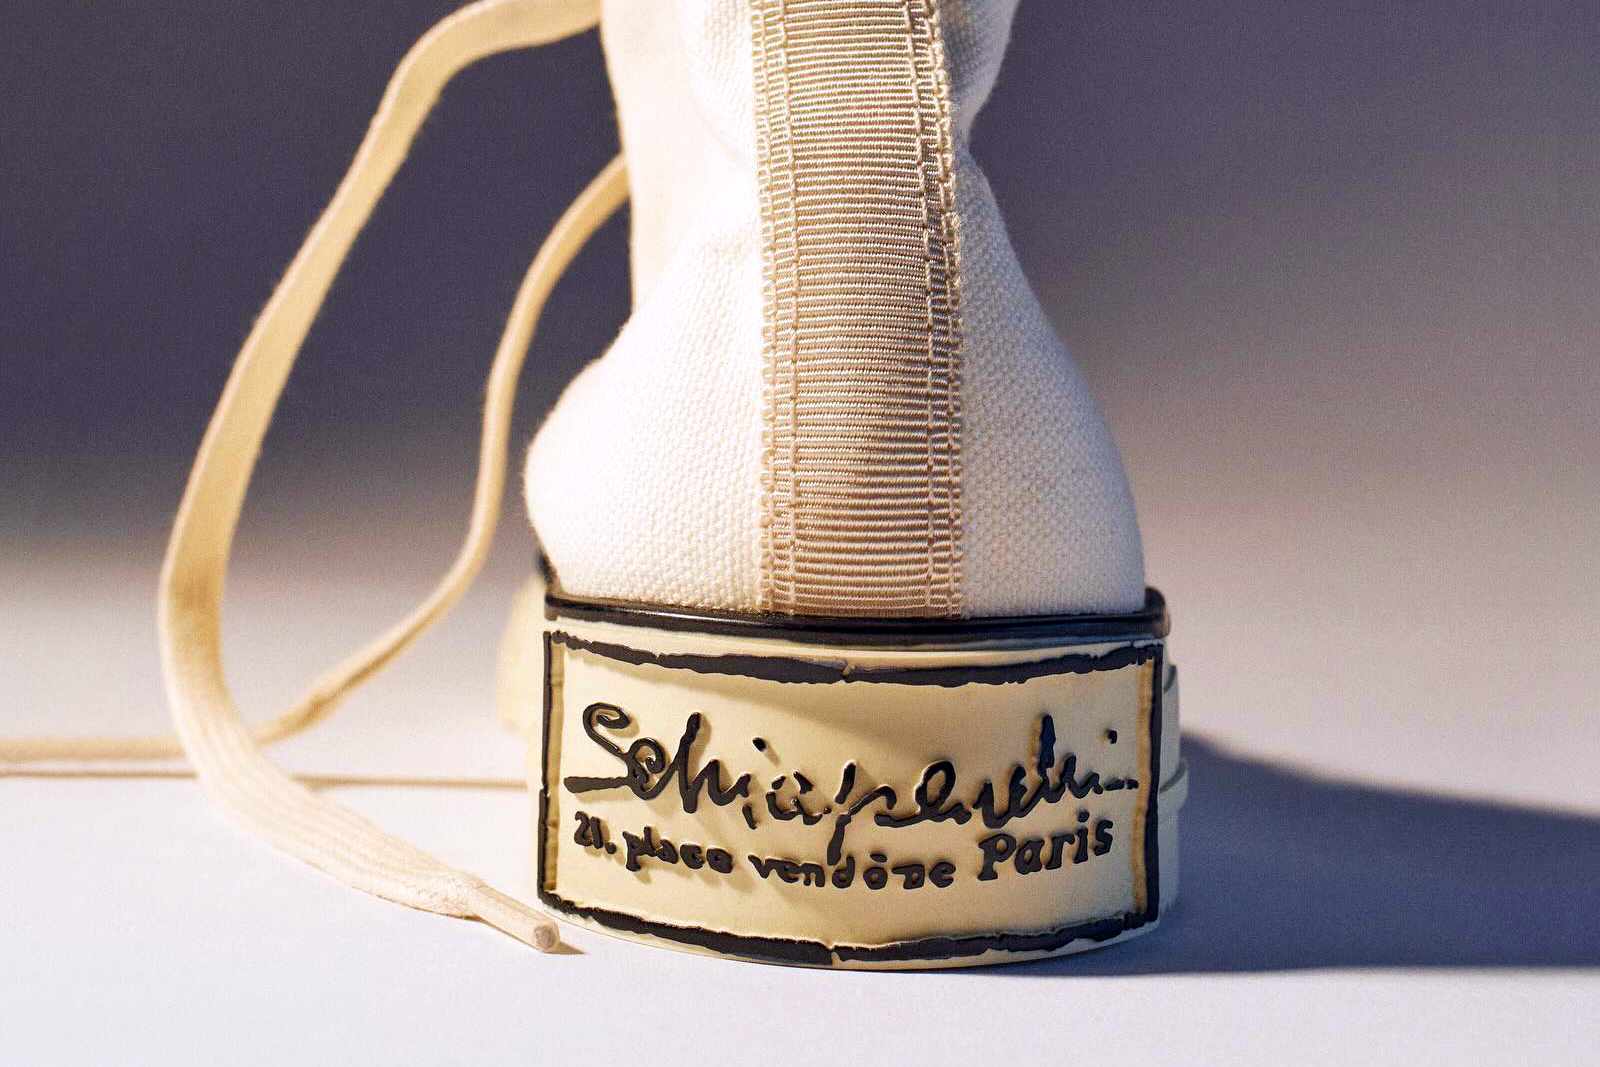 Schiaparelli's Pour Le Sport gold trimmed sneaker